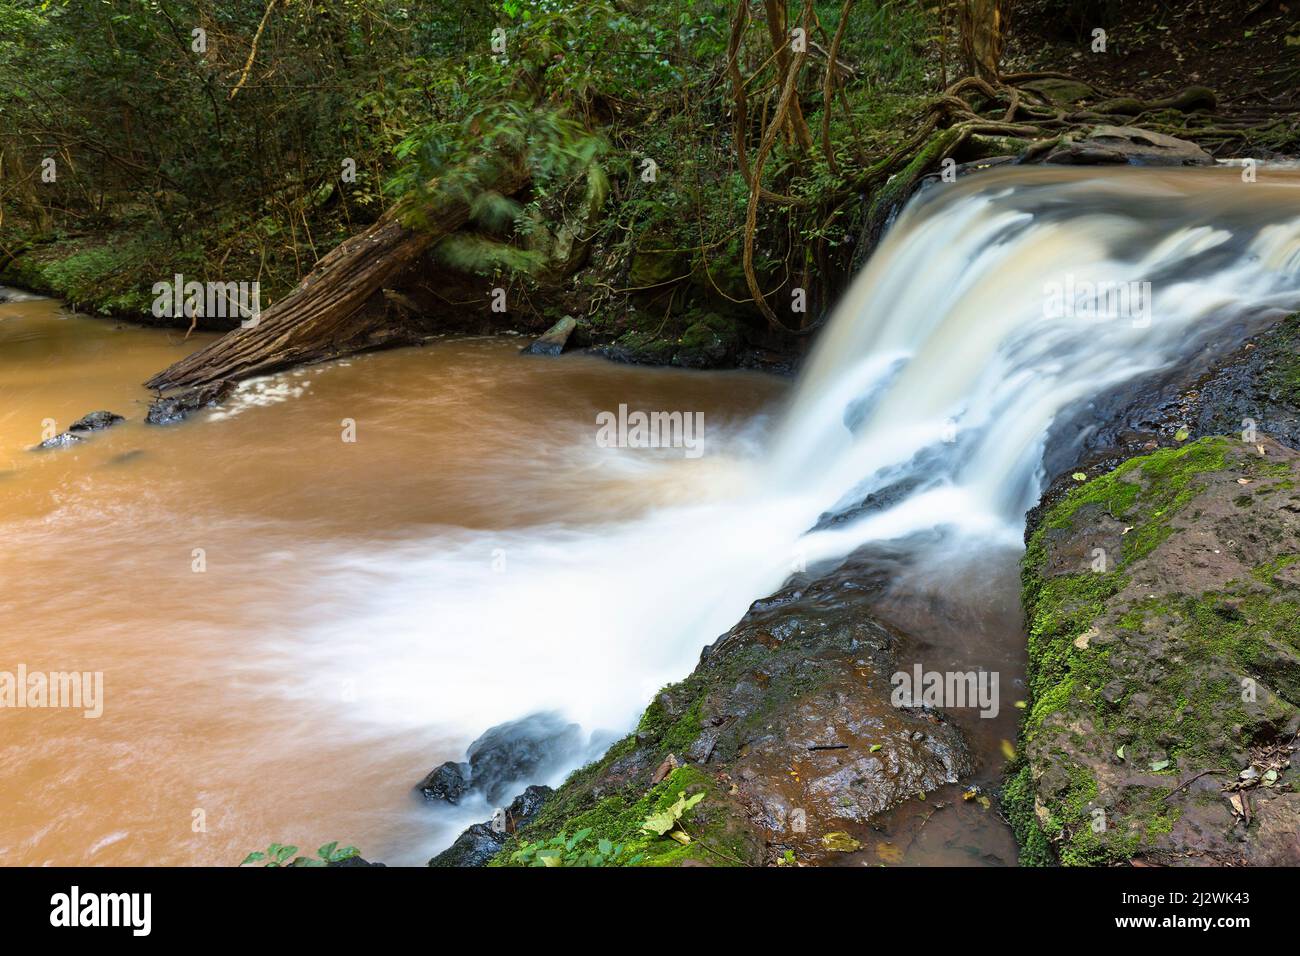 Small waterfall of the Nairobi River in Karura Forest, Nairobi, Kenya. Stock Photo